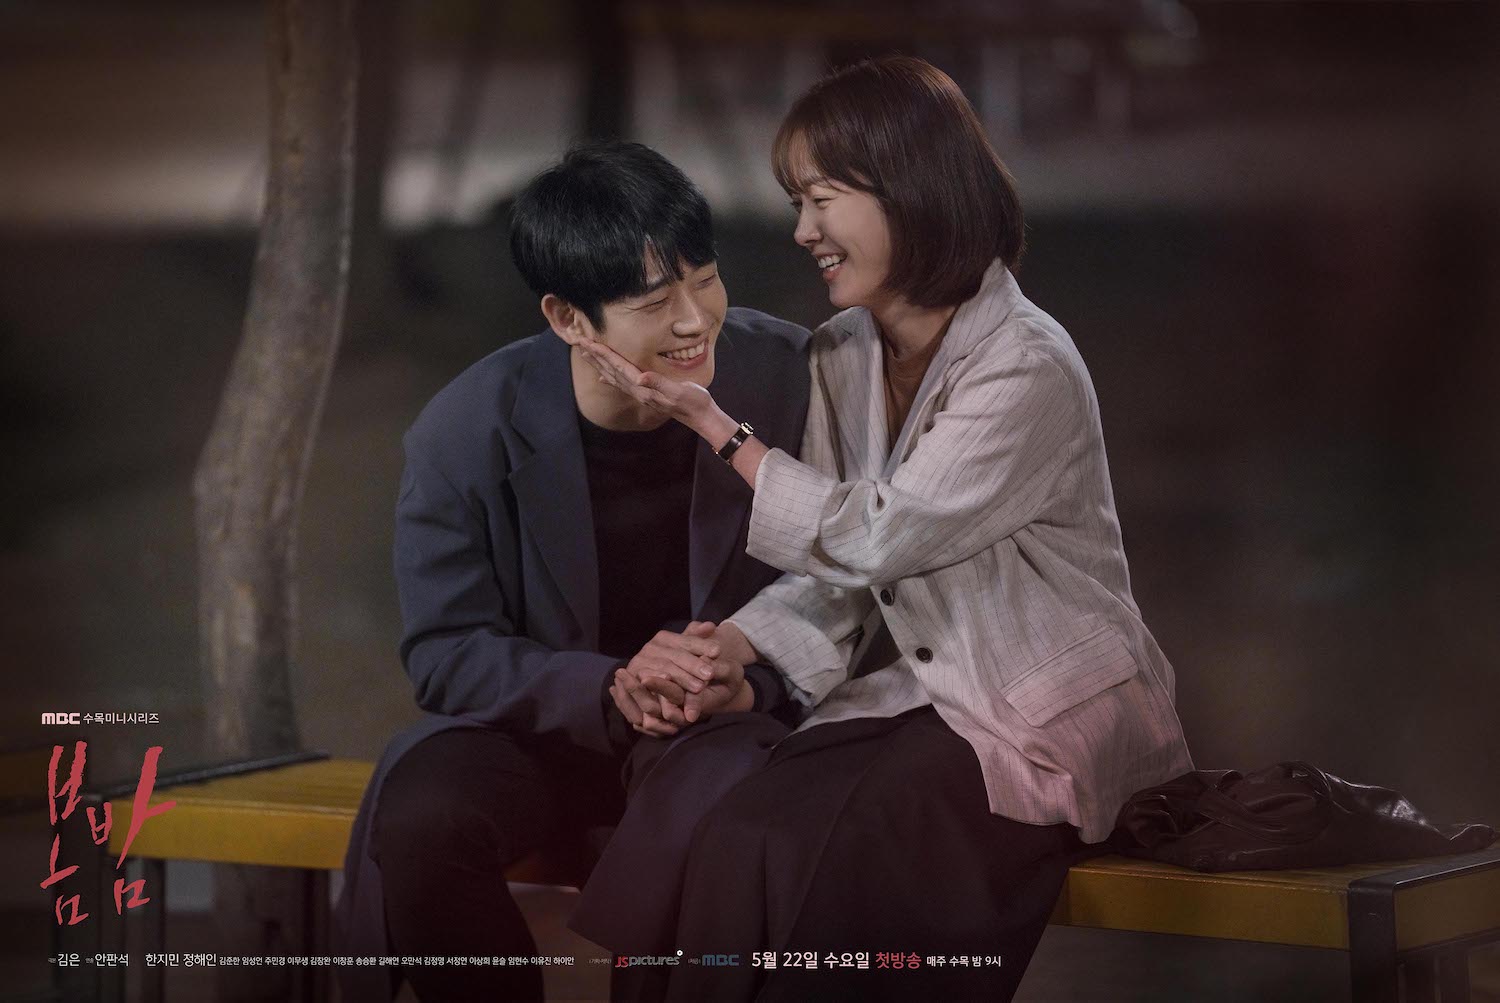 sinopsis drama korea one spring night (2019)